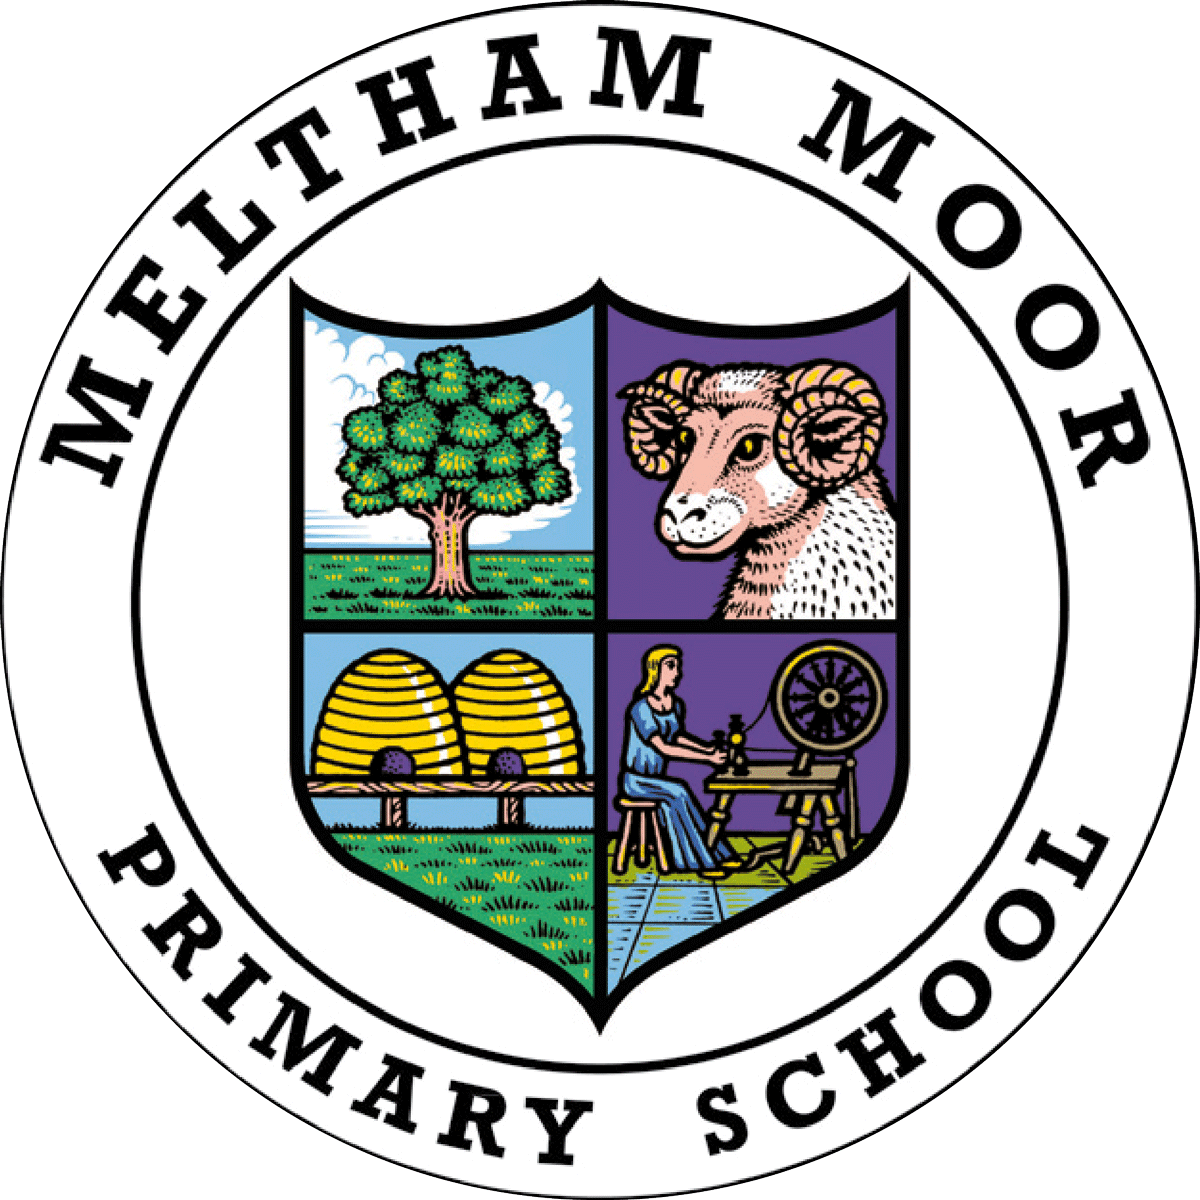 Meltham Moor Primary School